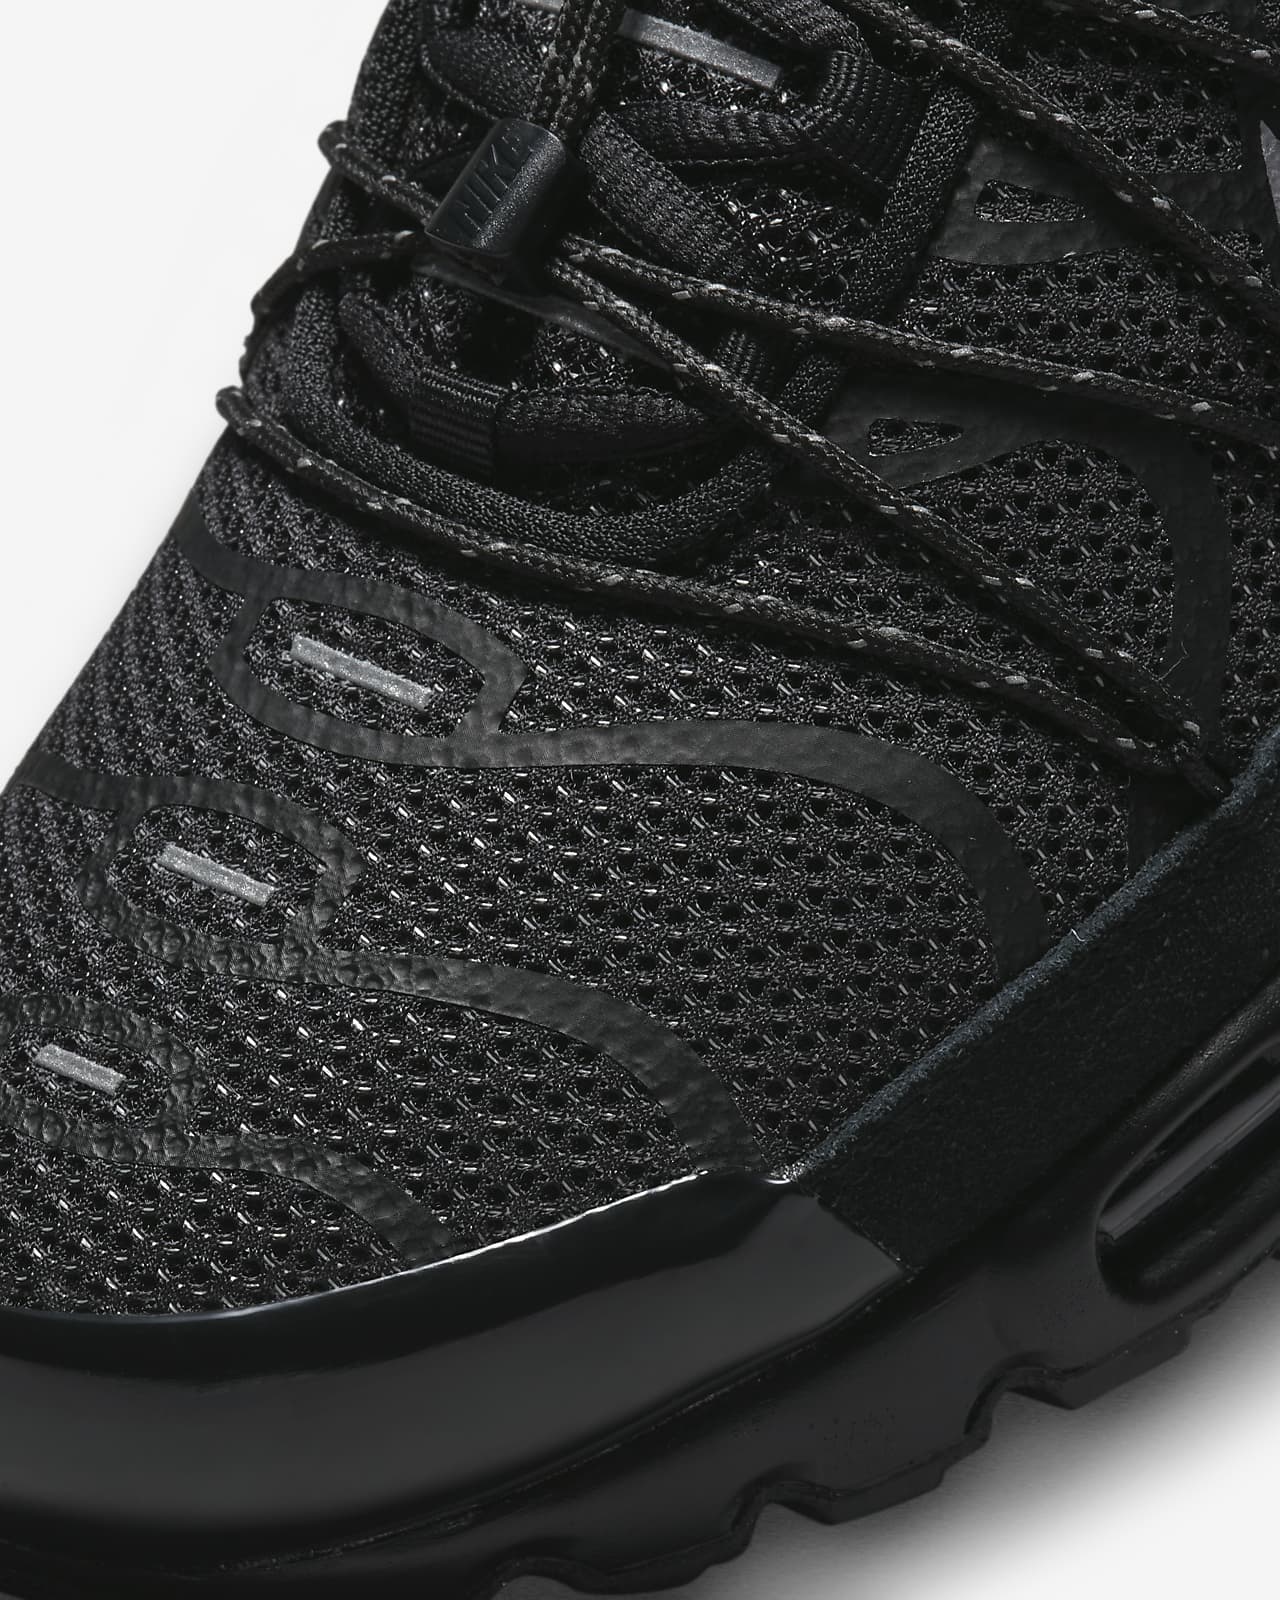 Viva cable Hay una necesidad de Nike Air Max Plus Utility Men's Shoes. Nike CA